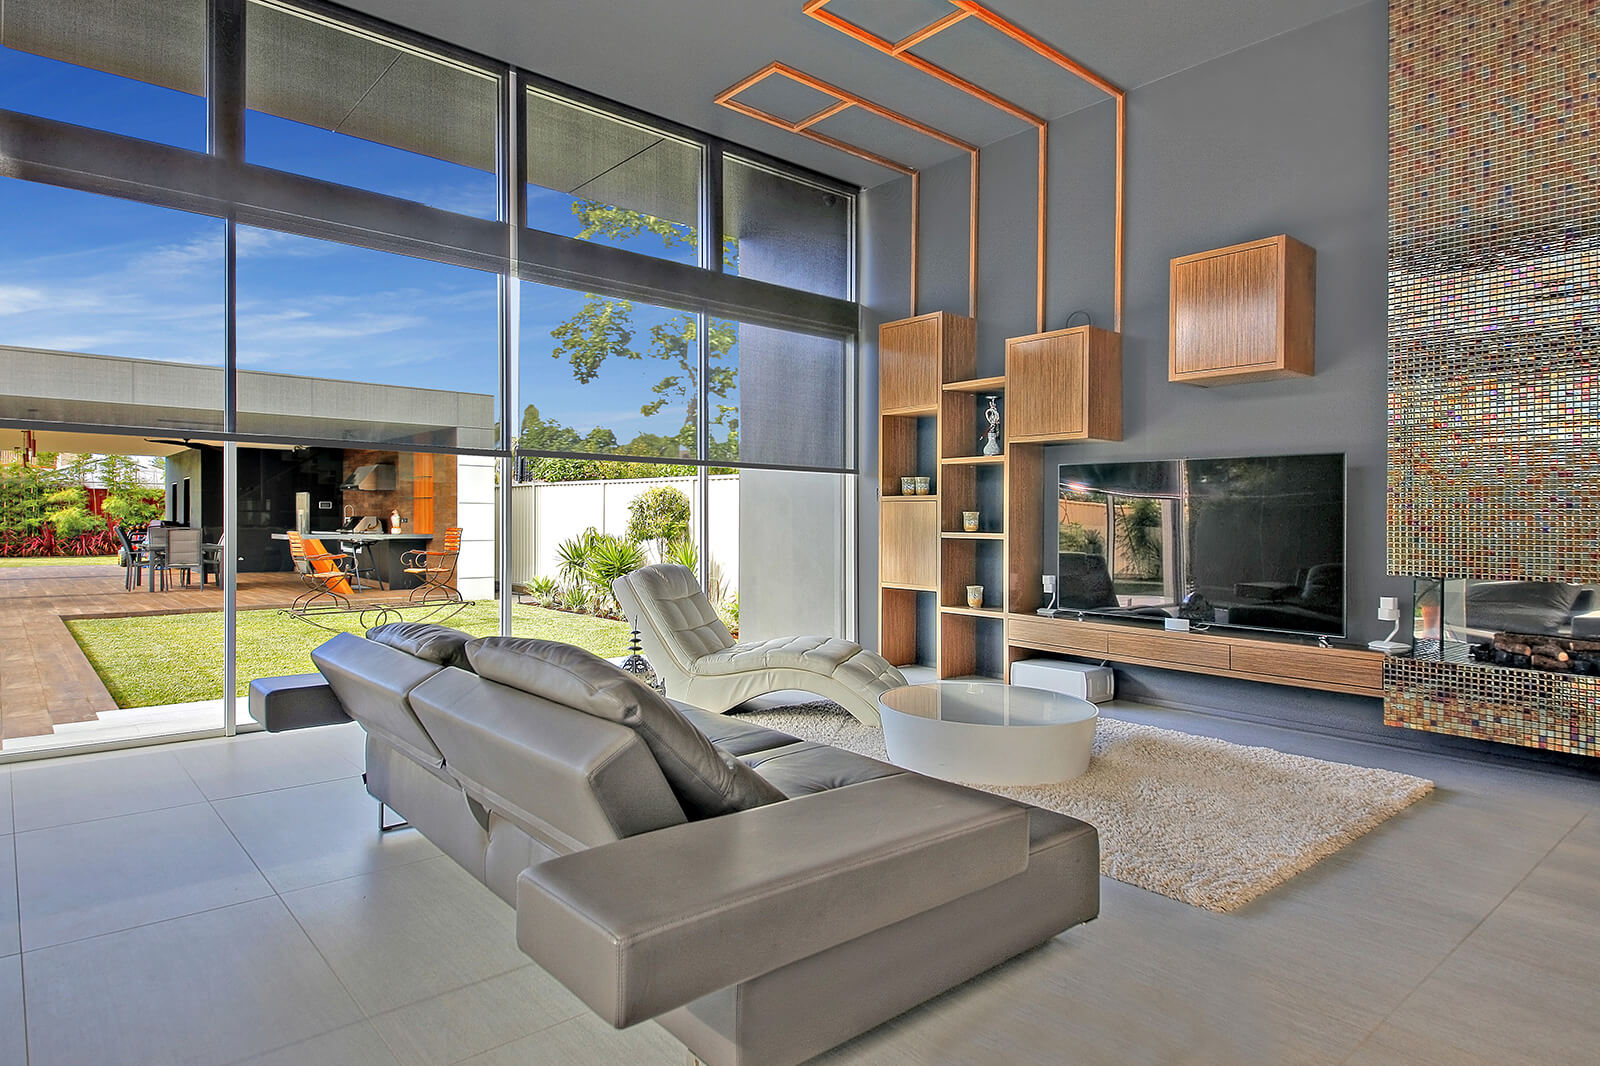 Mermet Koolblack in Living Room with Large Windows